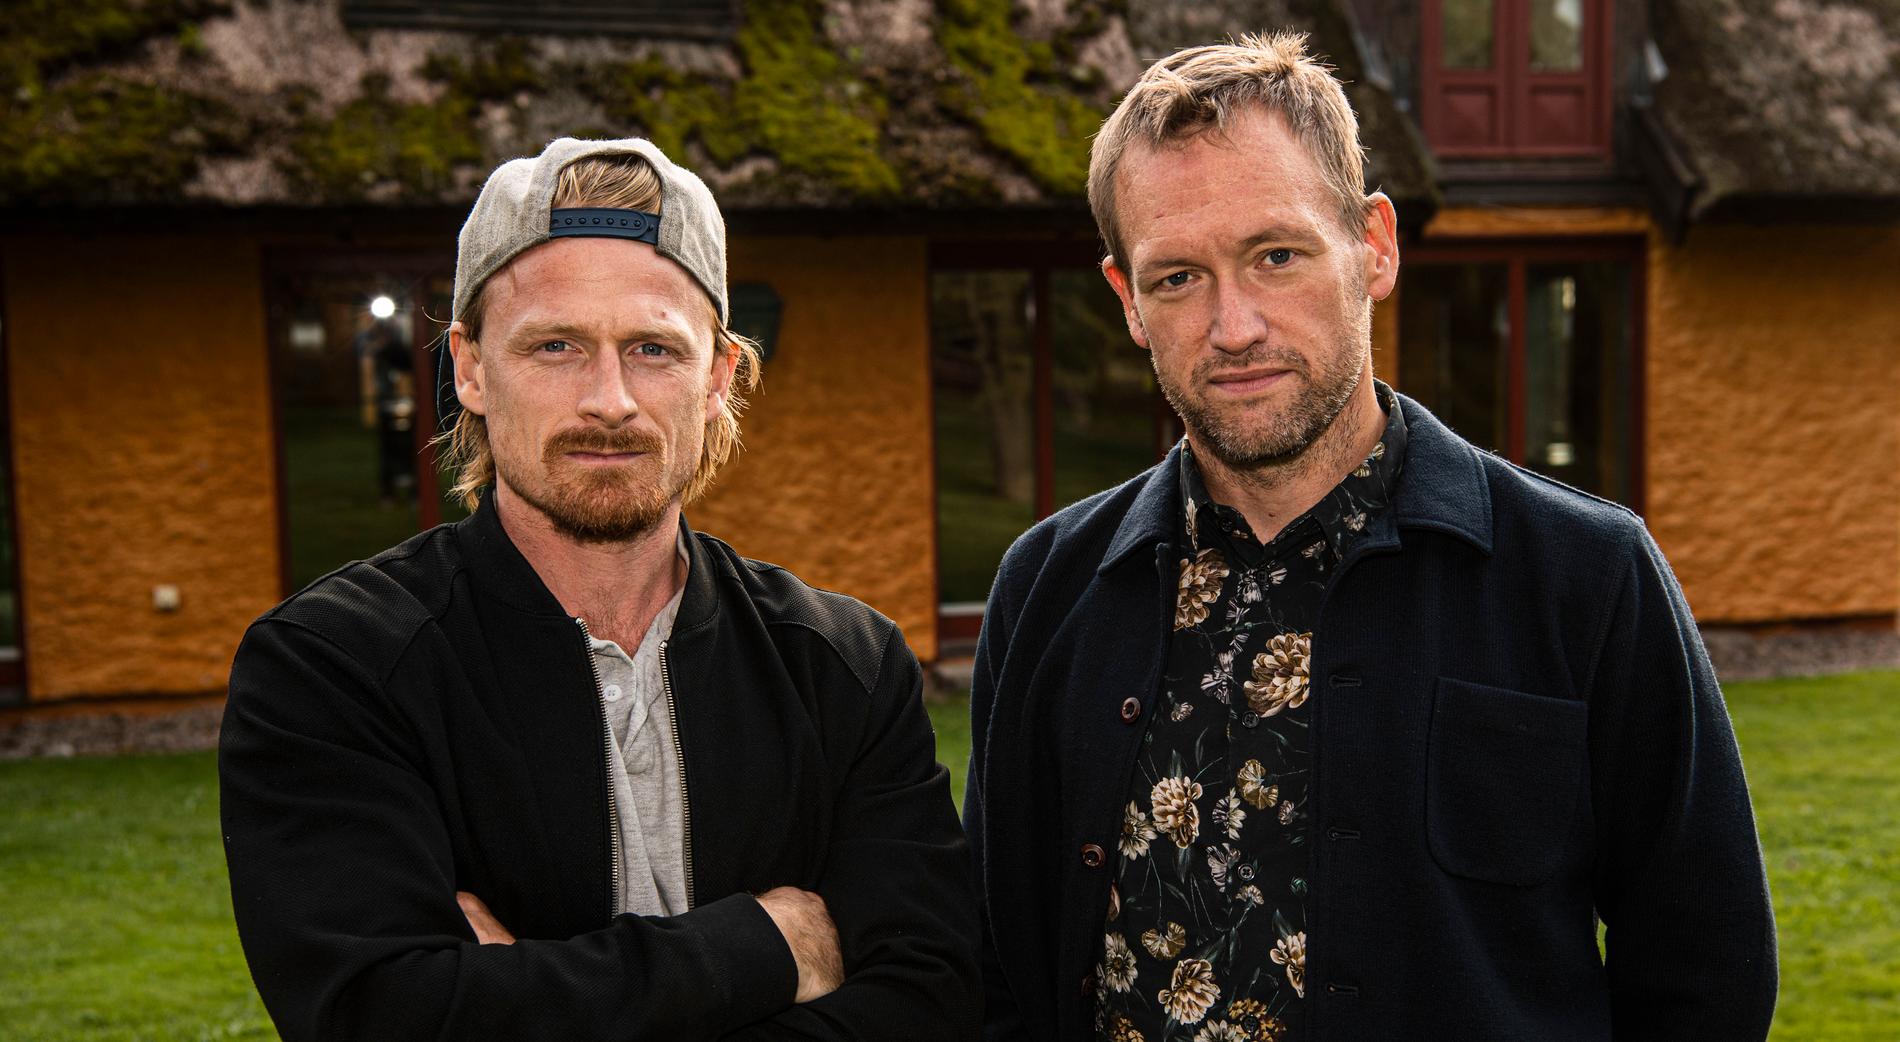 Fotograf Jimmy Wixtröm och reporter Torbjörn Ek, Aftonbladets team på plats i Båstad för ”Mästarnas mästare”.